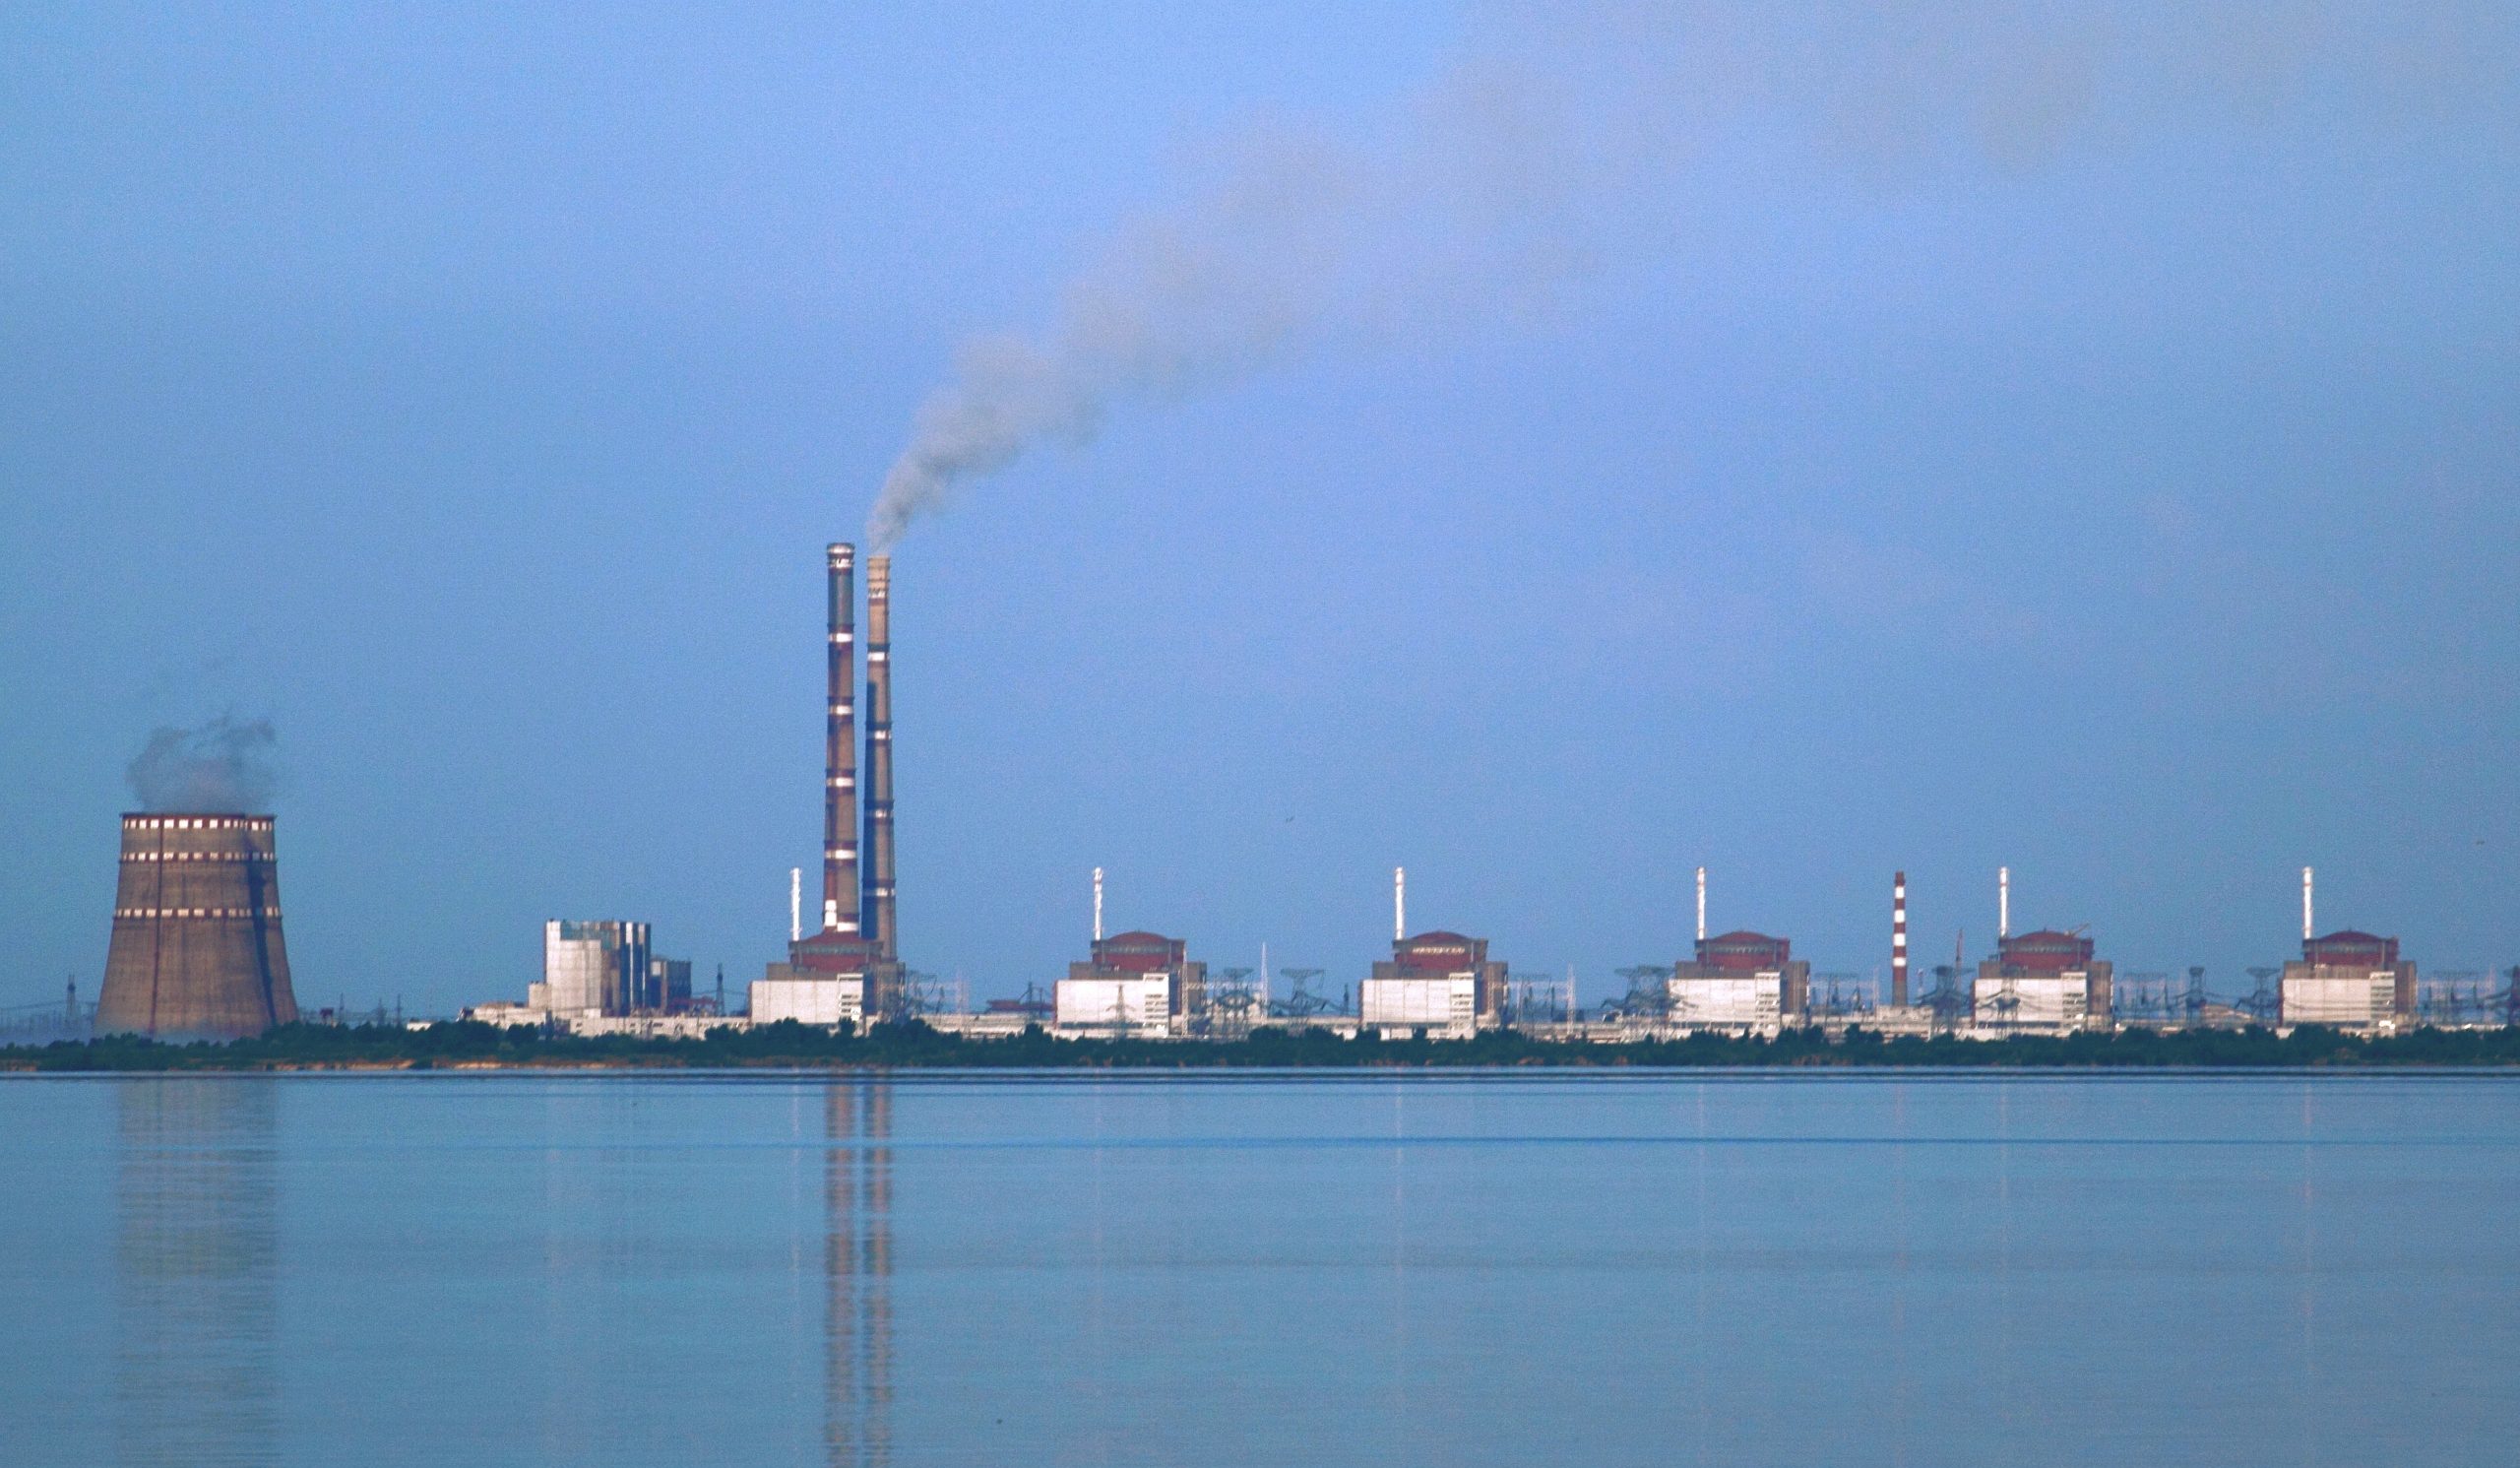 Zaporijya Nükleer Santrali, Ukrayna’nın elektrik üretiminde yüzde 20 paya sahip